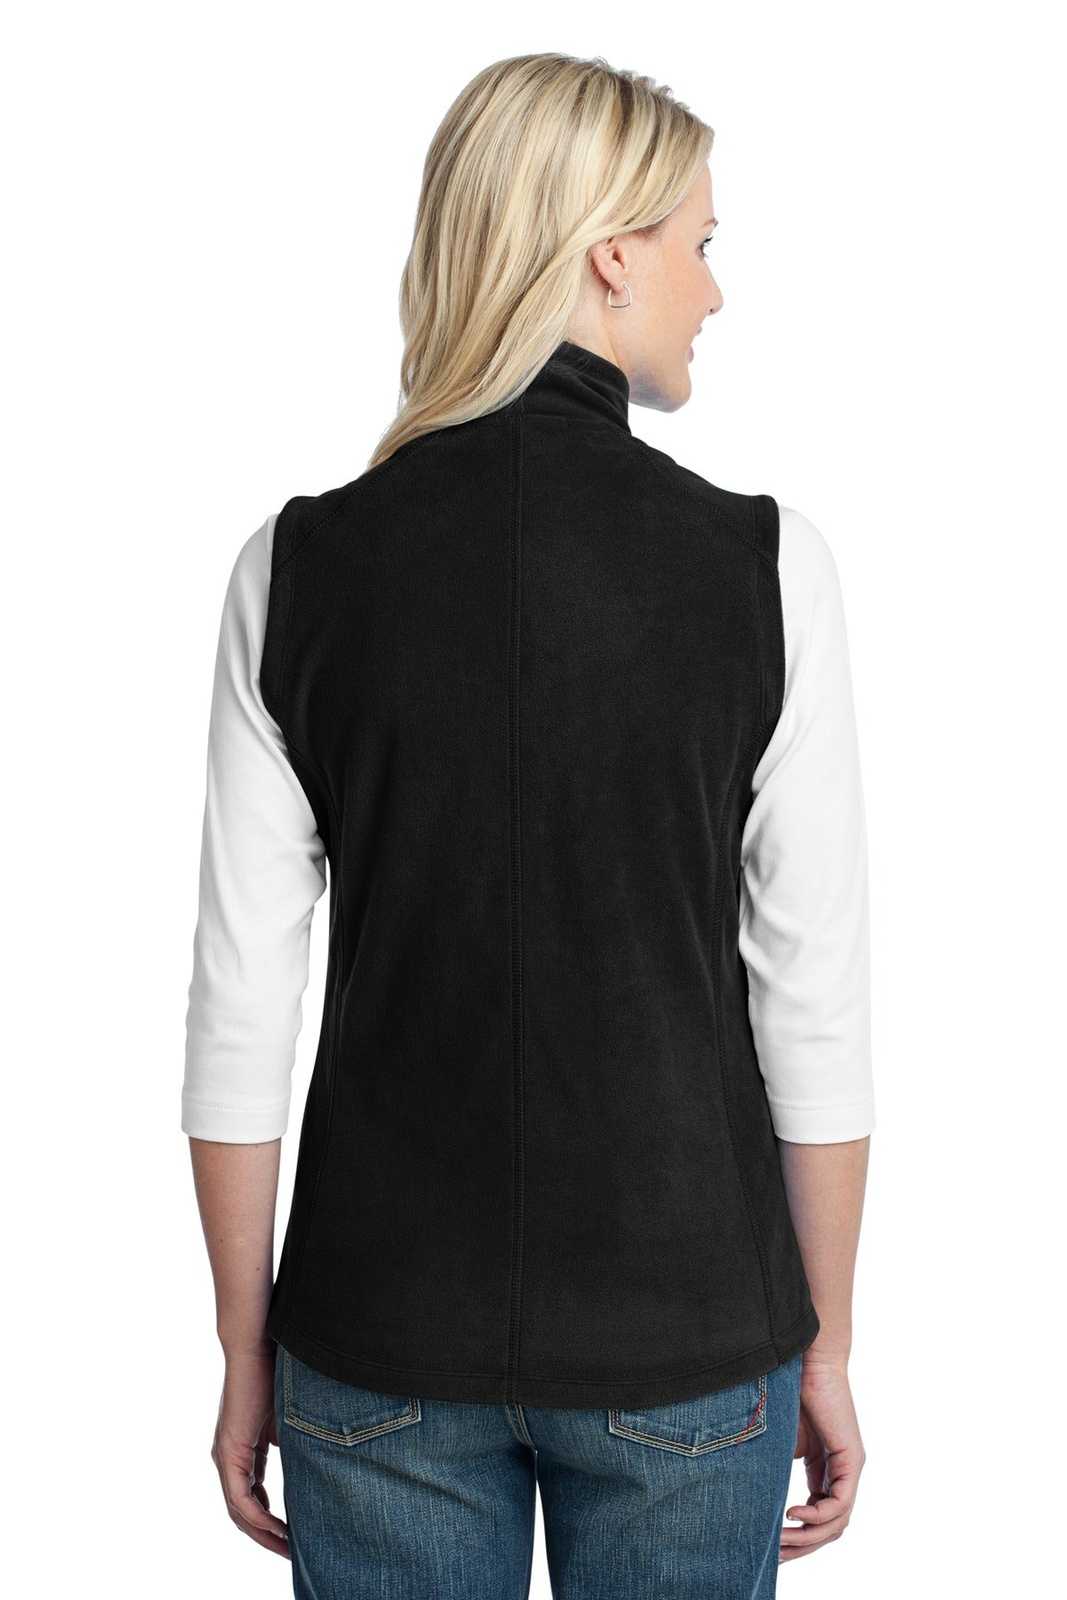 Port Authority L226 Ladies Microfleece Vest - Black - HIT a Double - 2